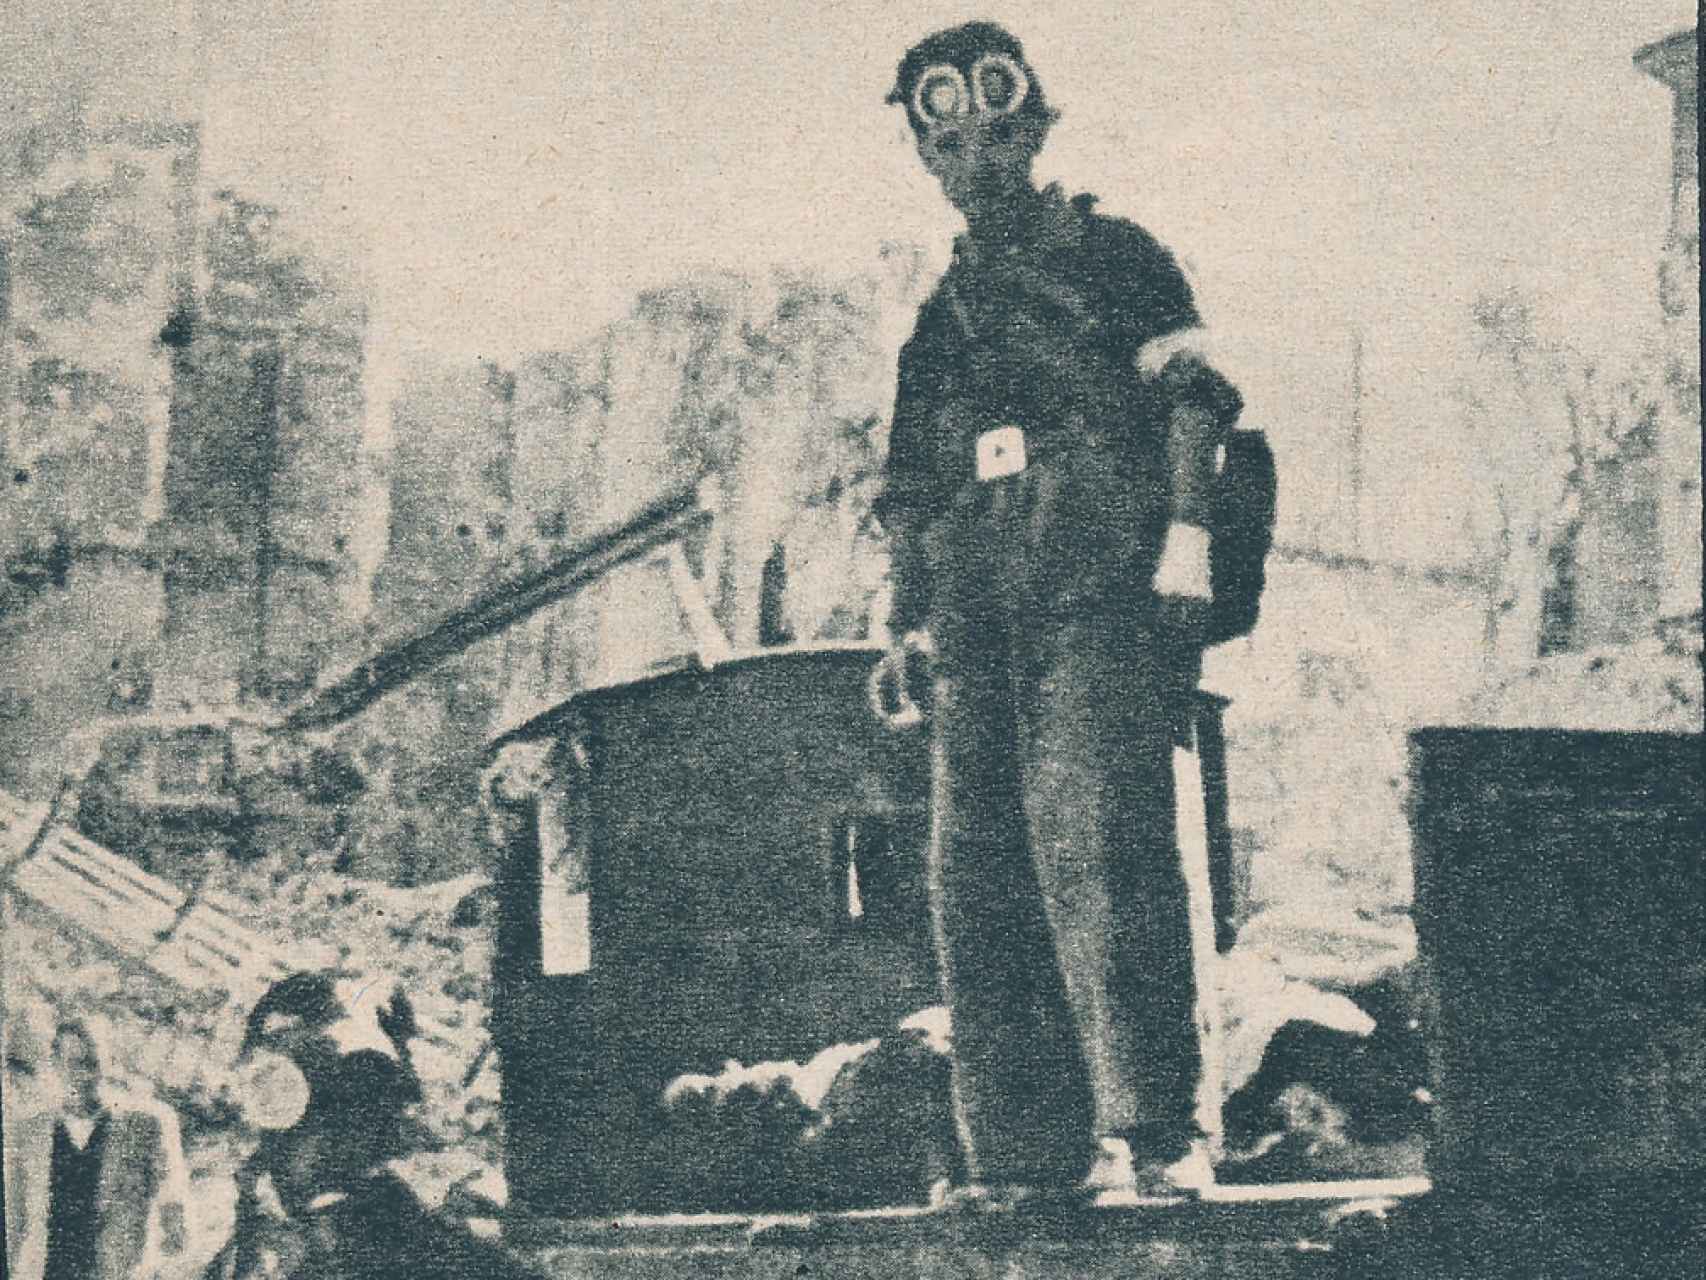 Un miembro de Cruz Roja, con una máscara de gas, recoge cadáveres en Toledo durante la Guerra Civil.